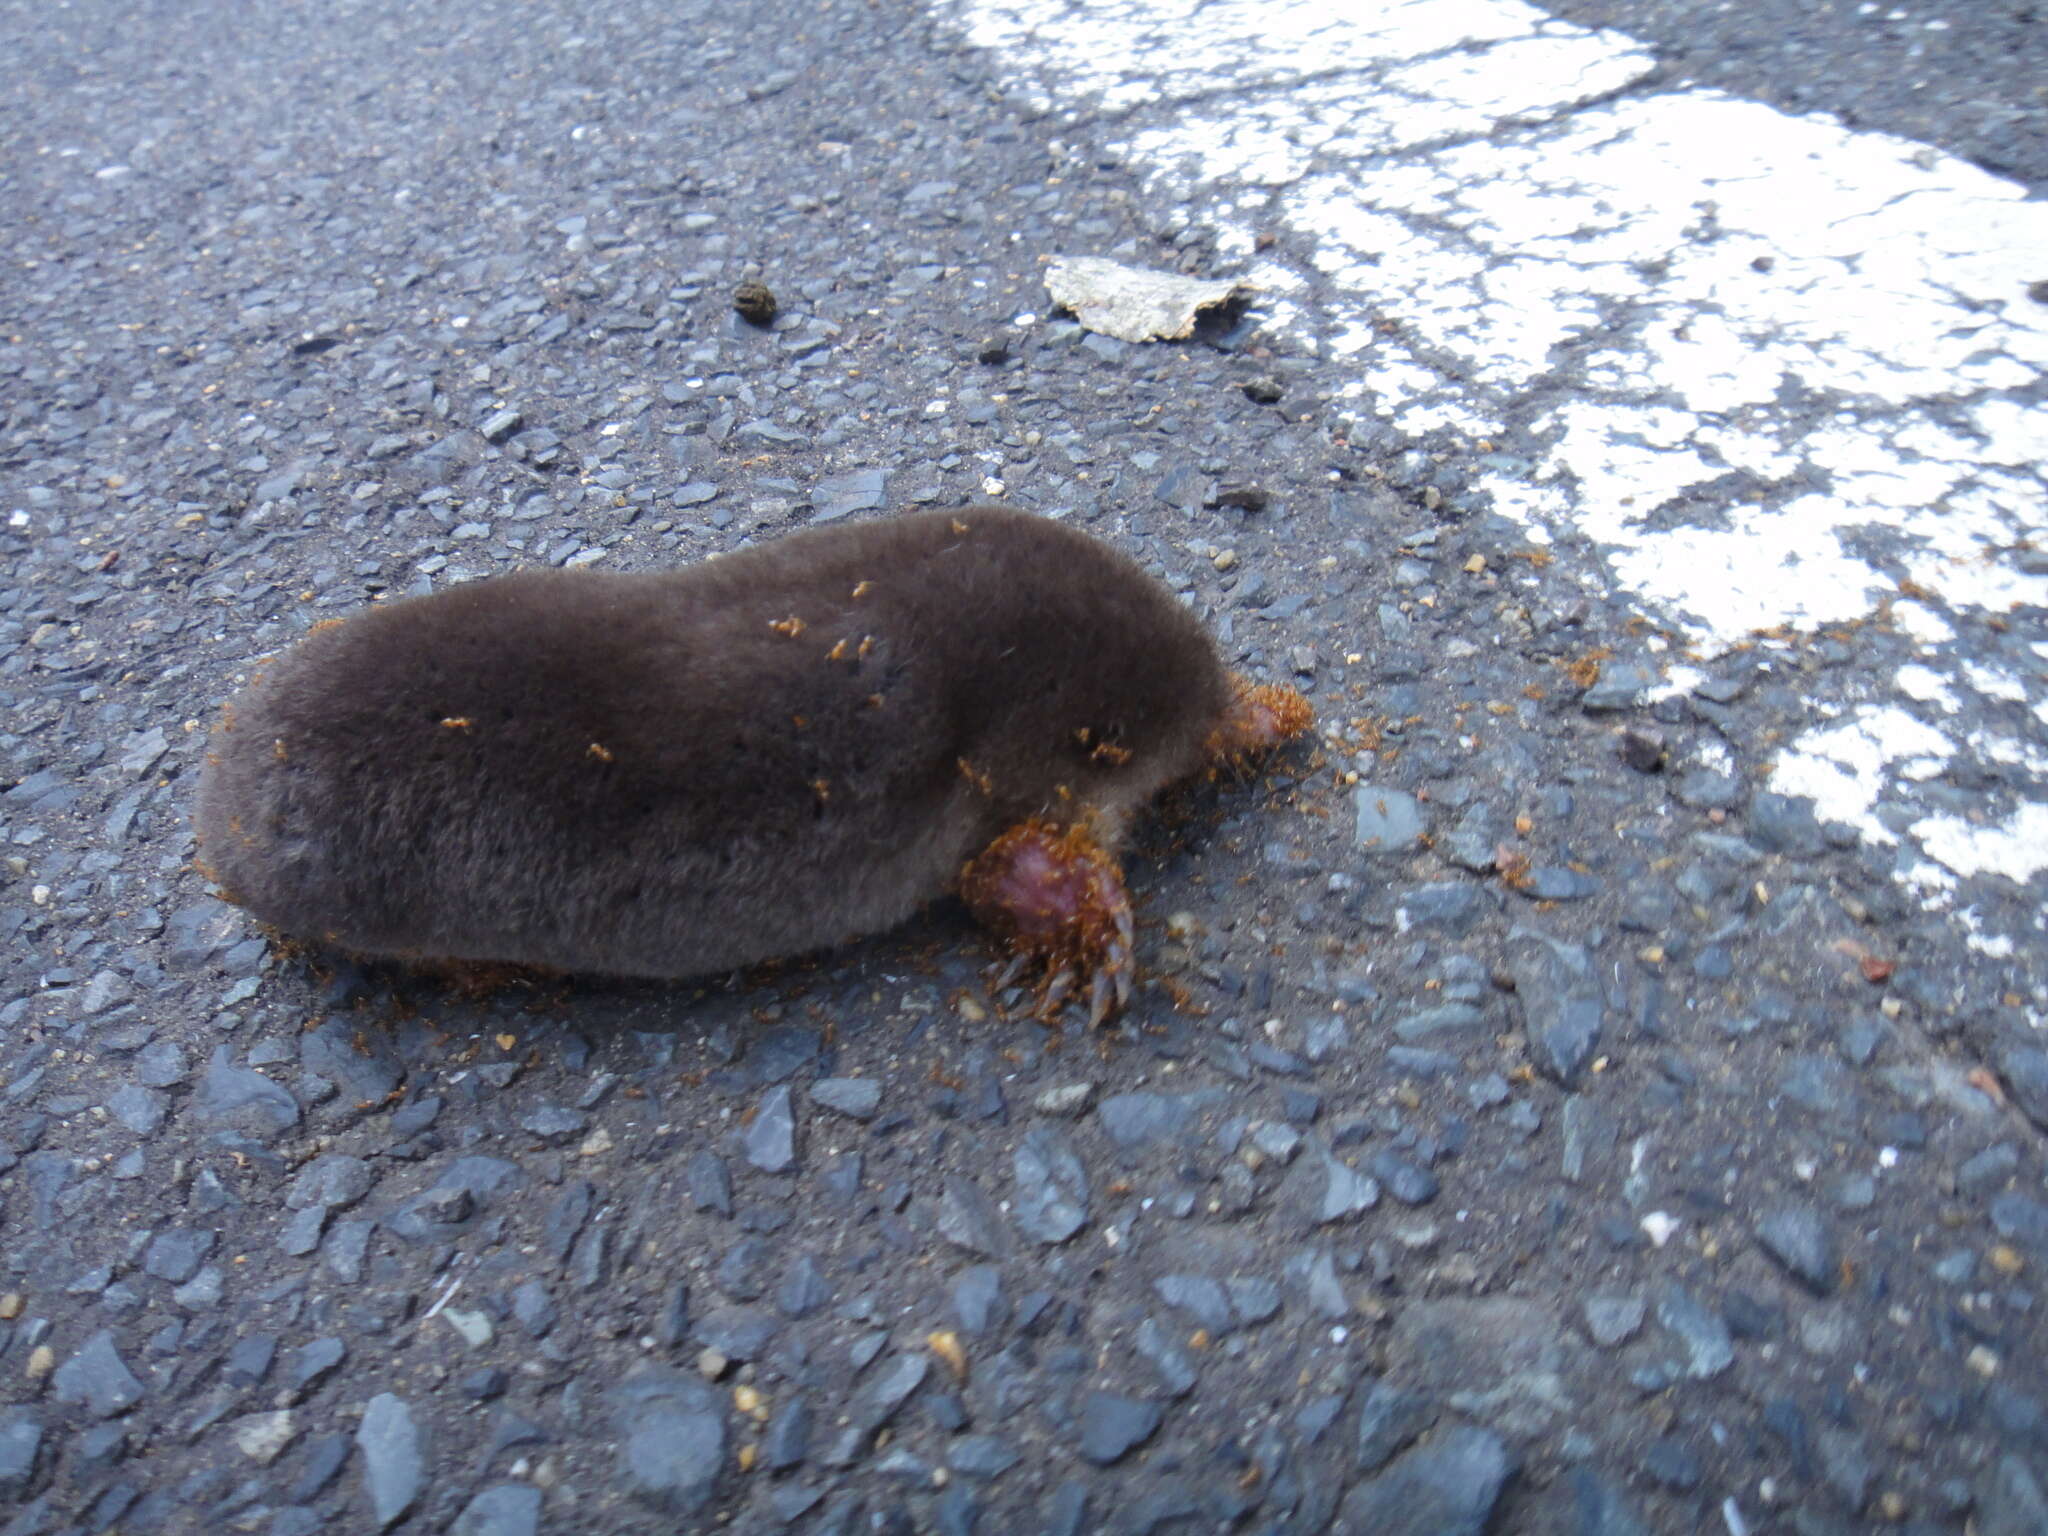 Image of Japanese Mole